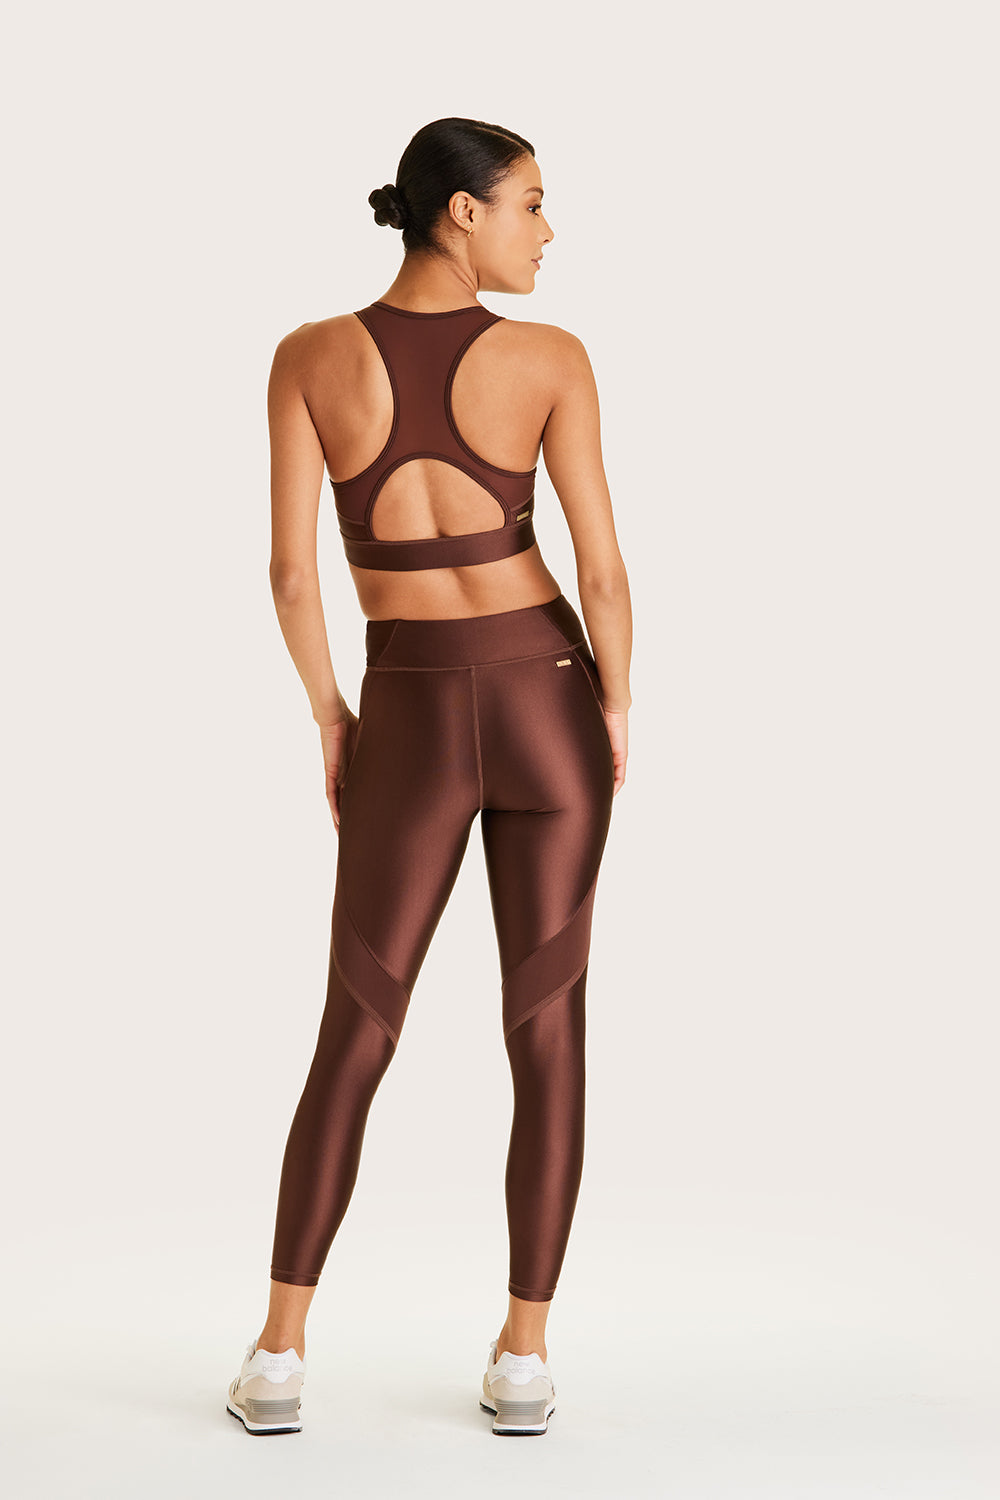 Meet American Apparel's New Underwear Model—P.S. She's 62